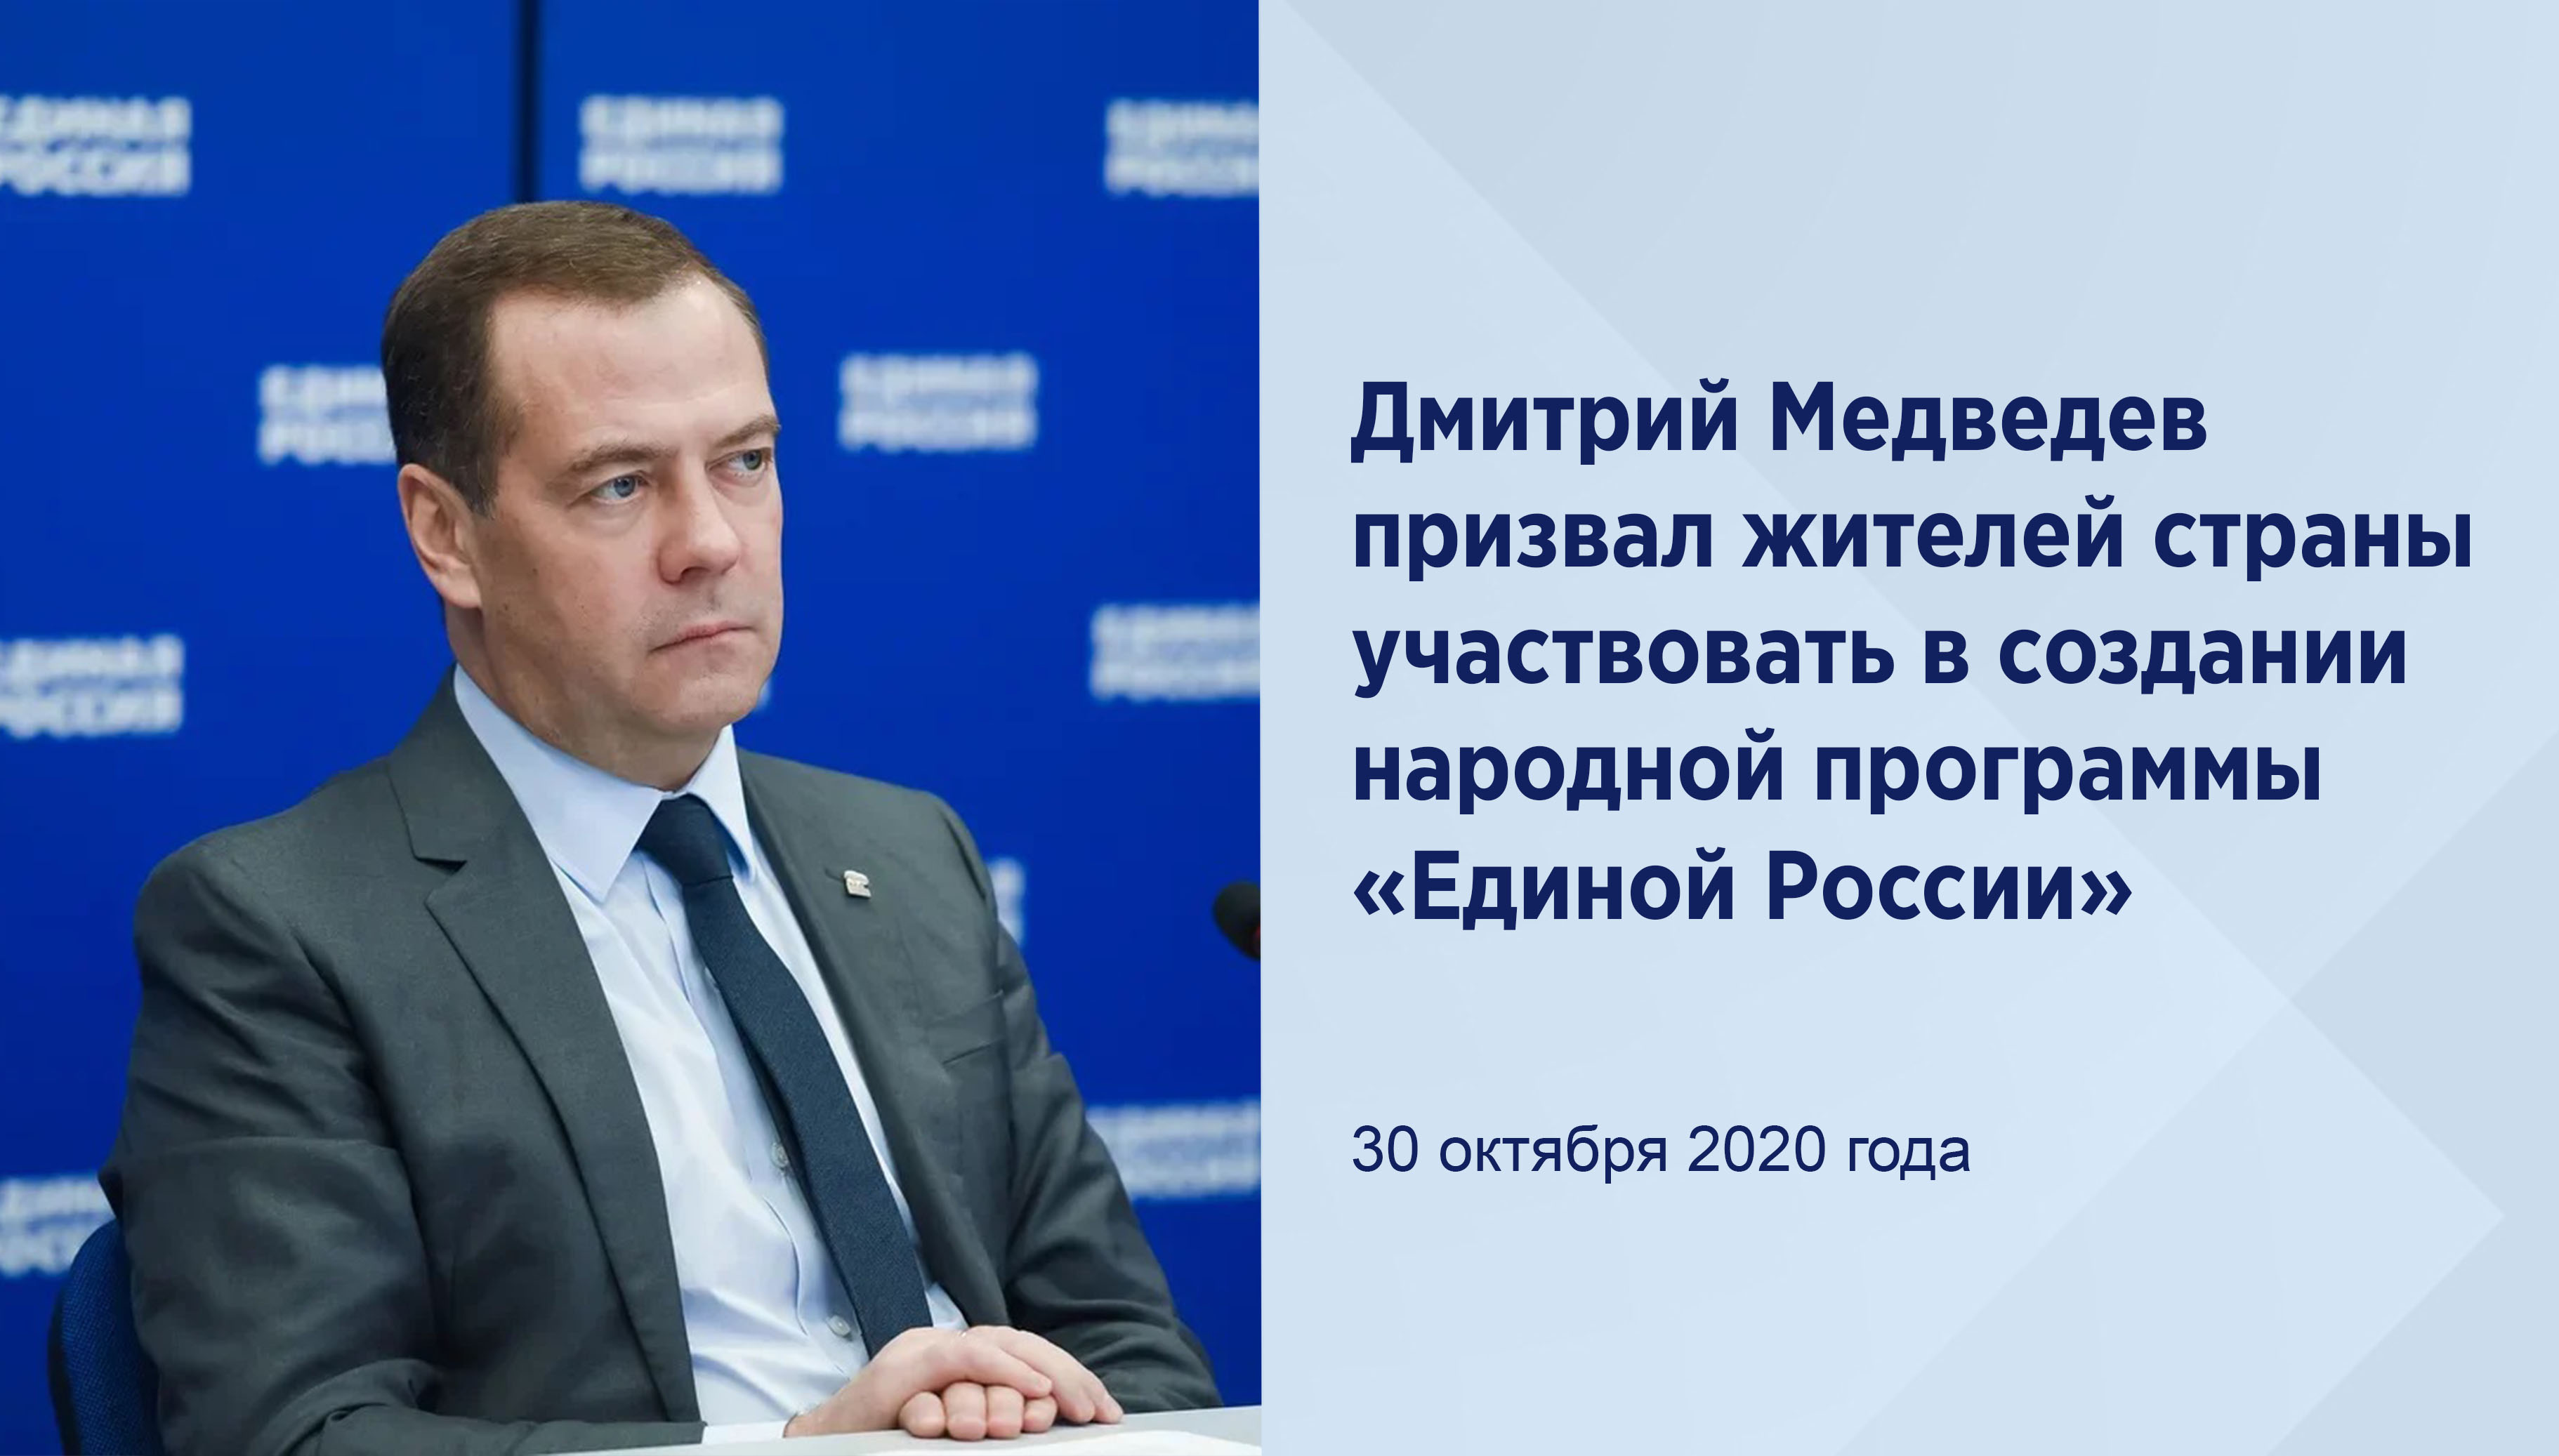 Дмитрий Медведев призвал жителей
страны участвовать в создании
народной программы «Единой
России»